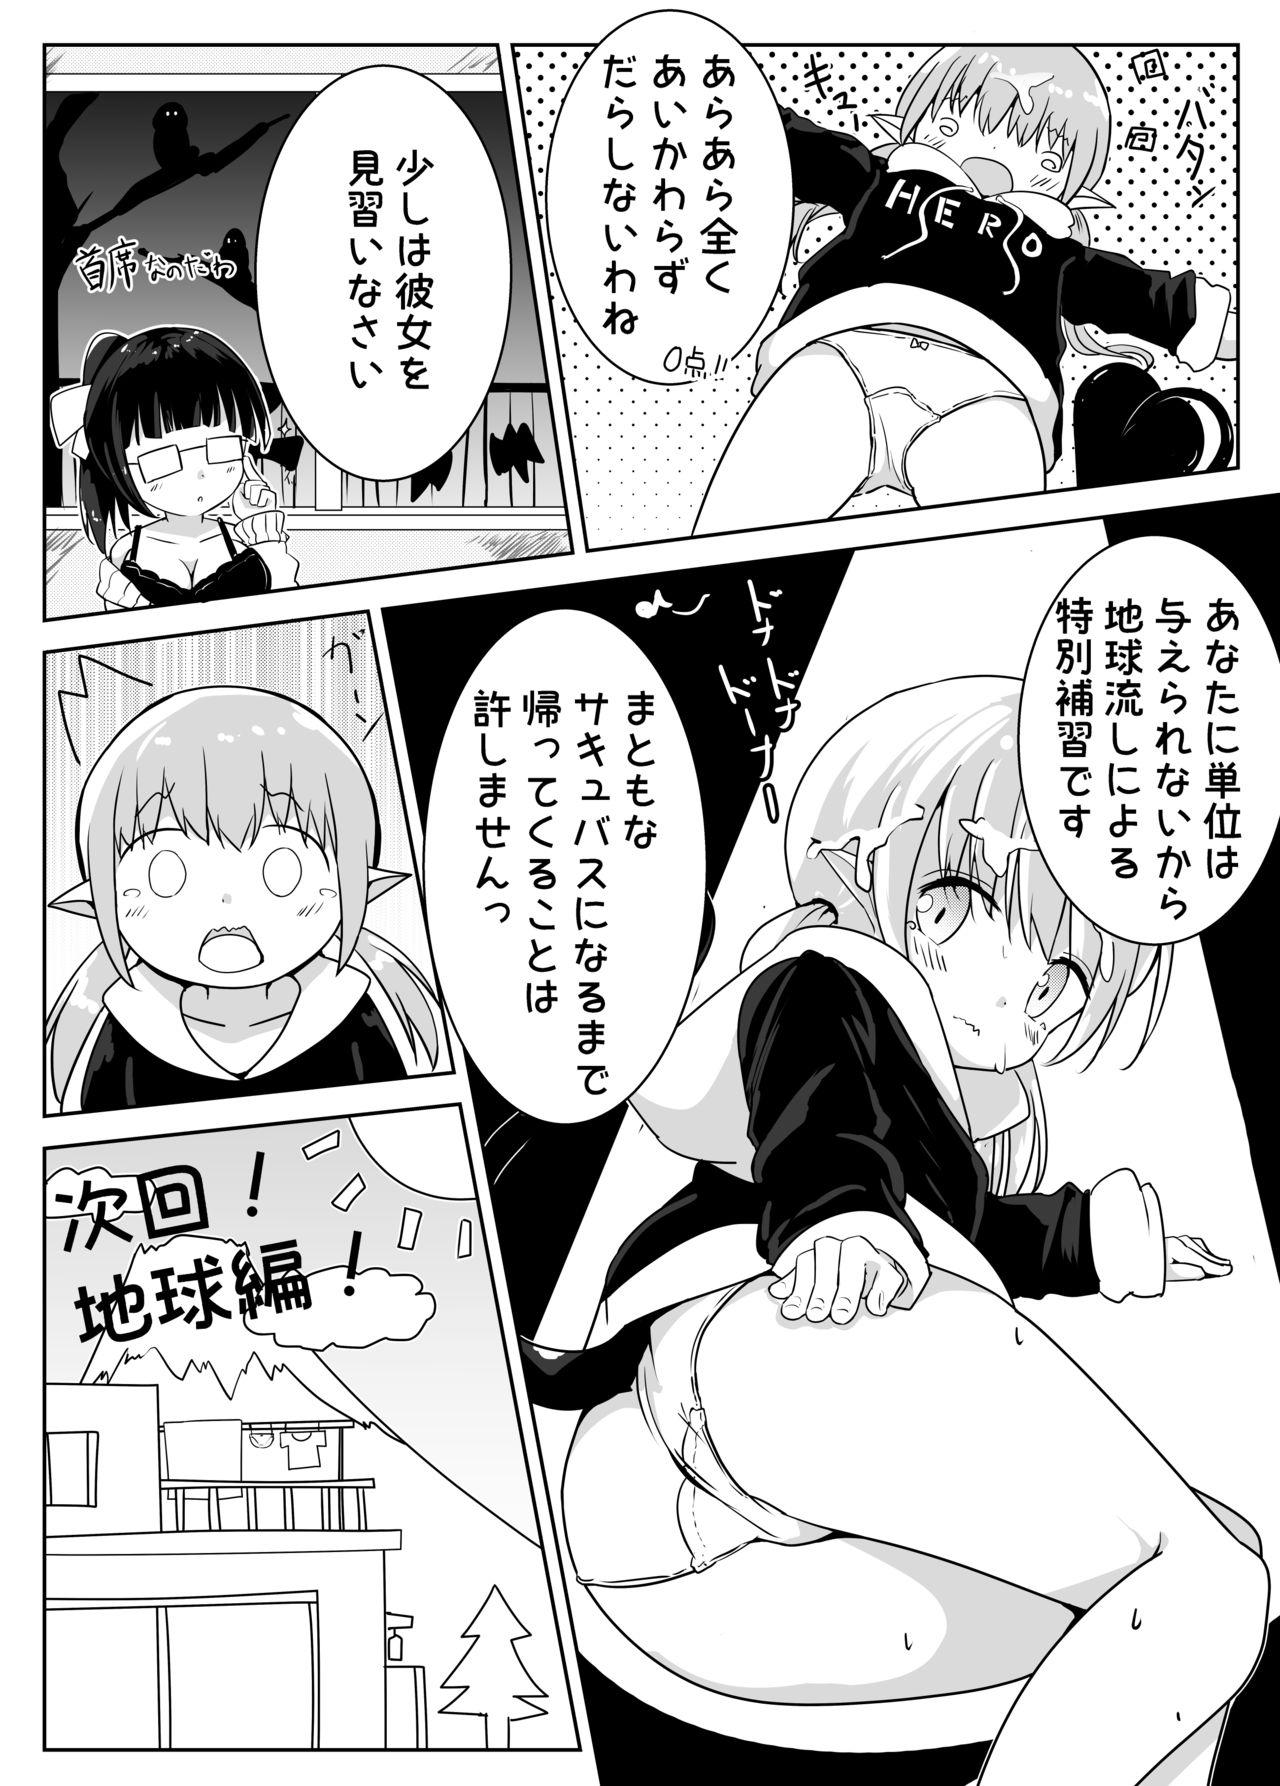 [Motiyuki] Ecchi na Koto ga Nigate na Loli Succubus-chan Manga 1-3 7